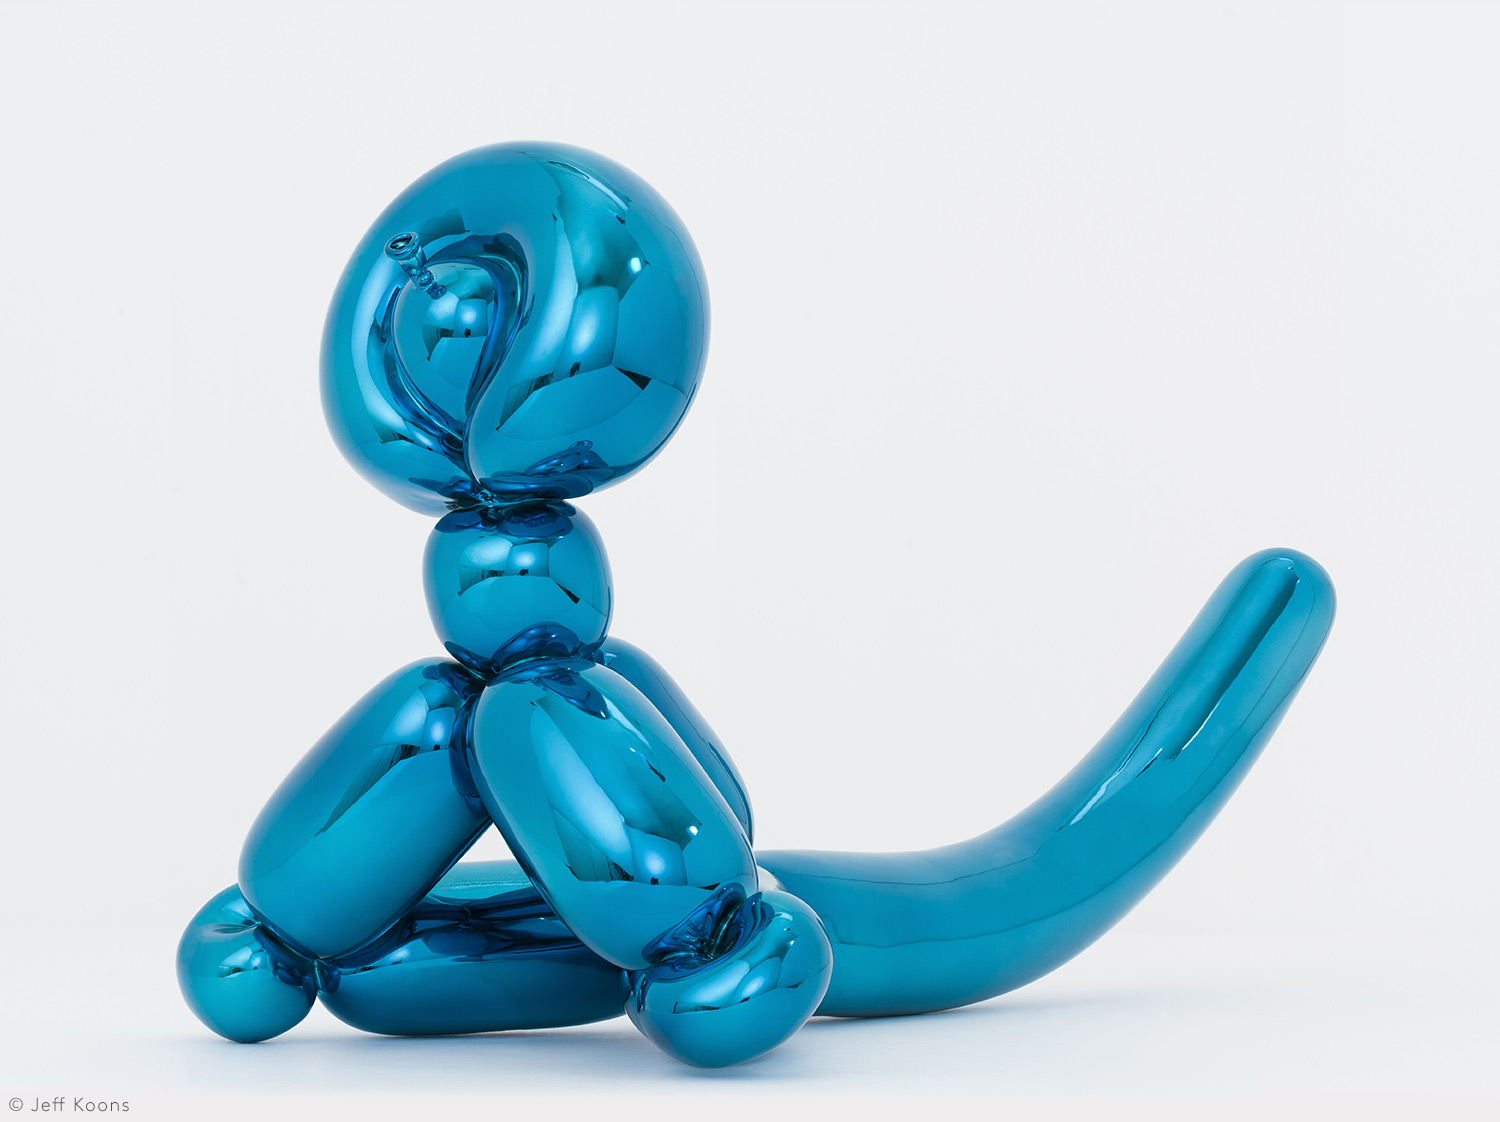 バルーン・モンキー・ブルー en porcelaine de la collection BALLOON MONKEY (BLUE) by Jeff Koons Bernardaud